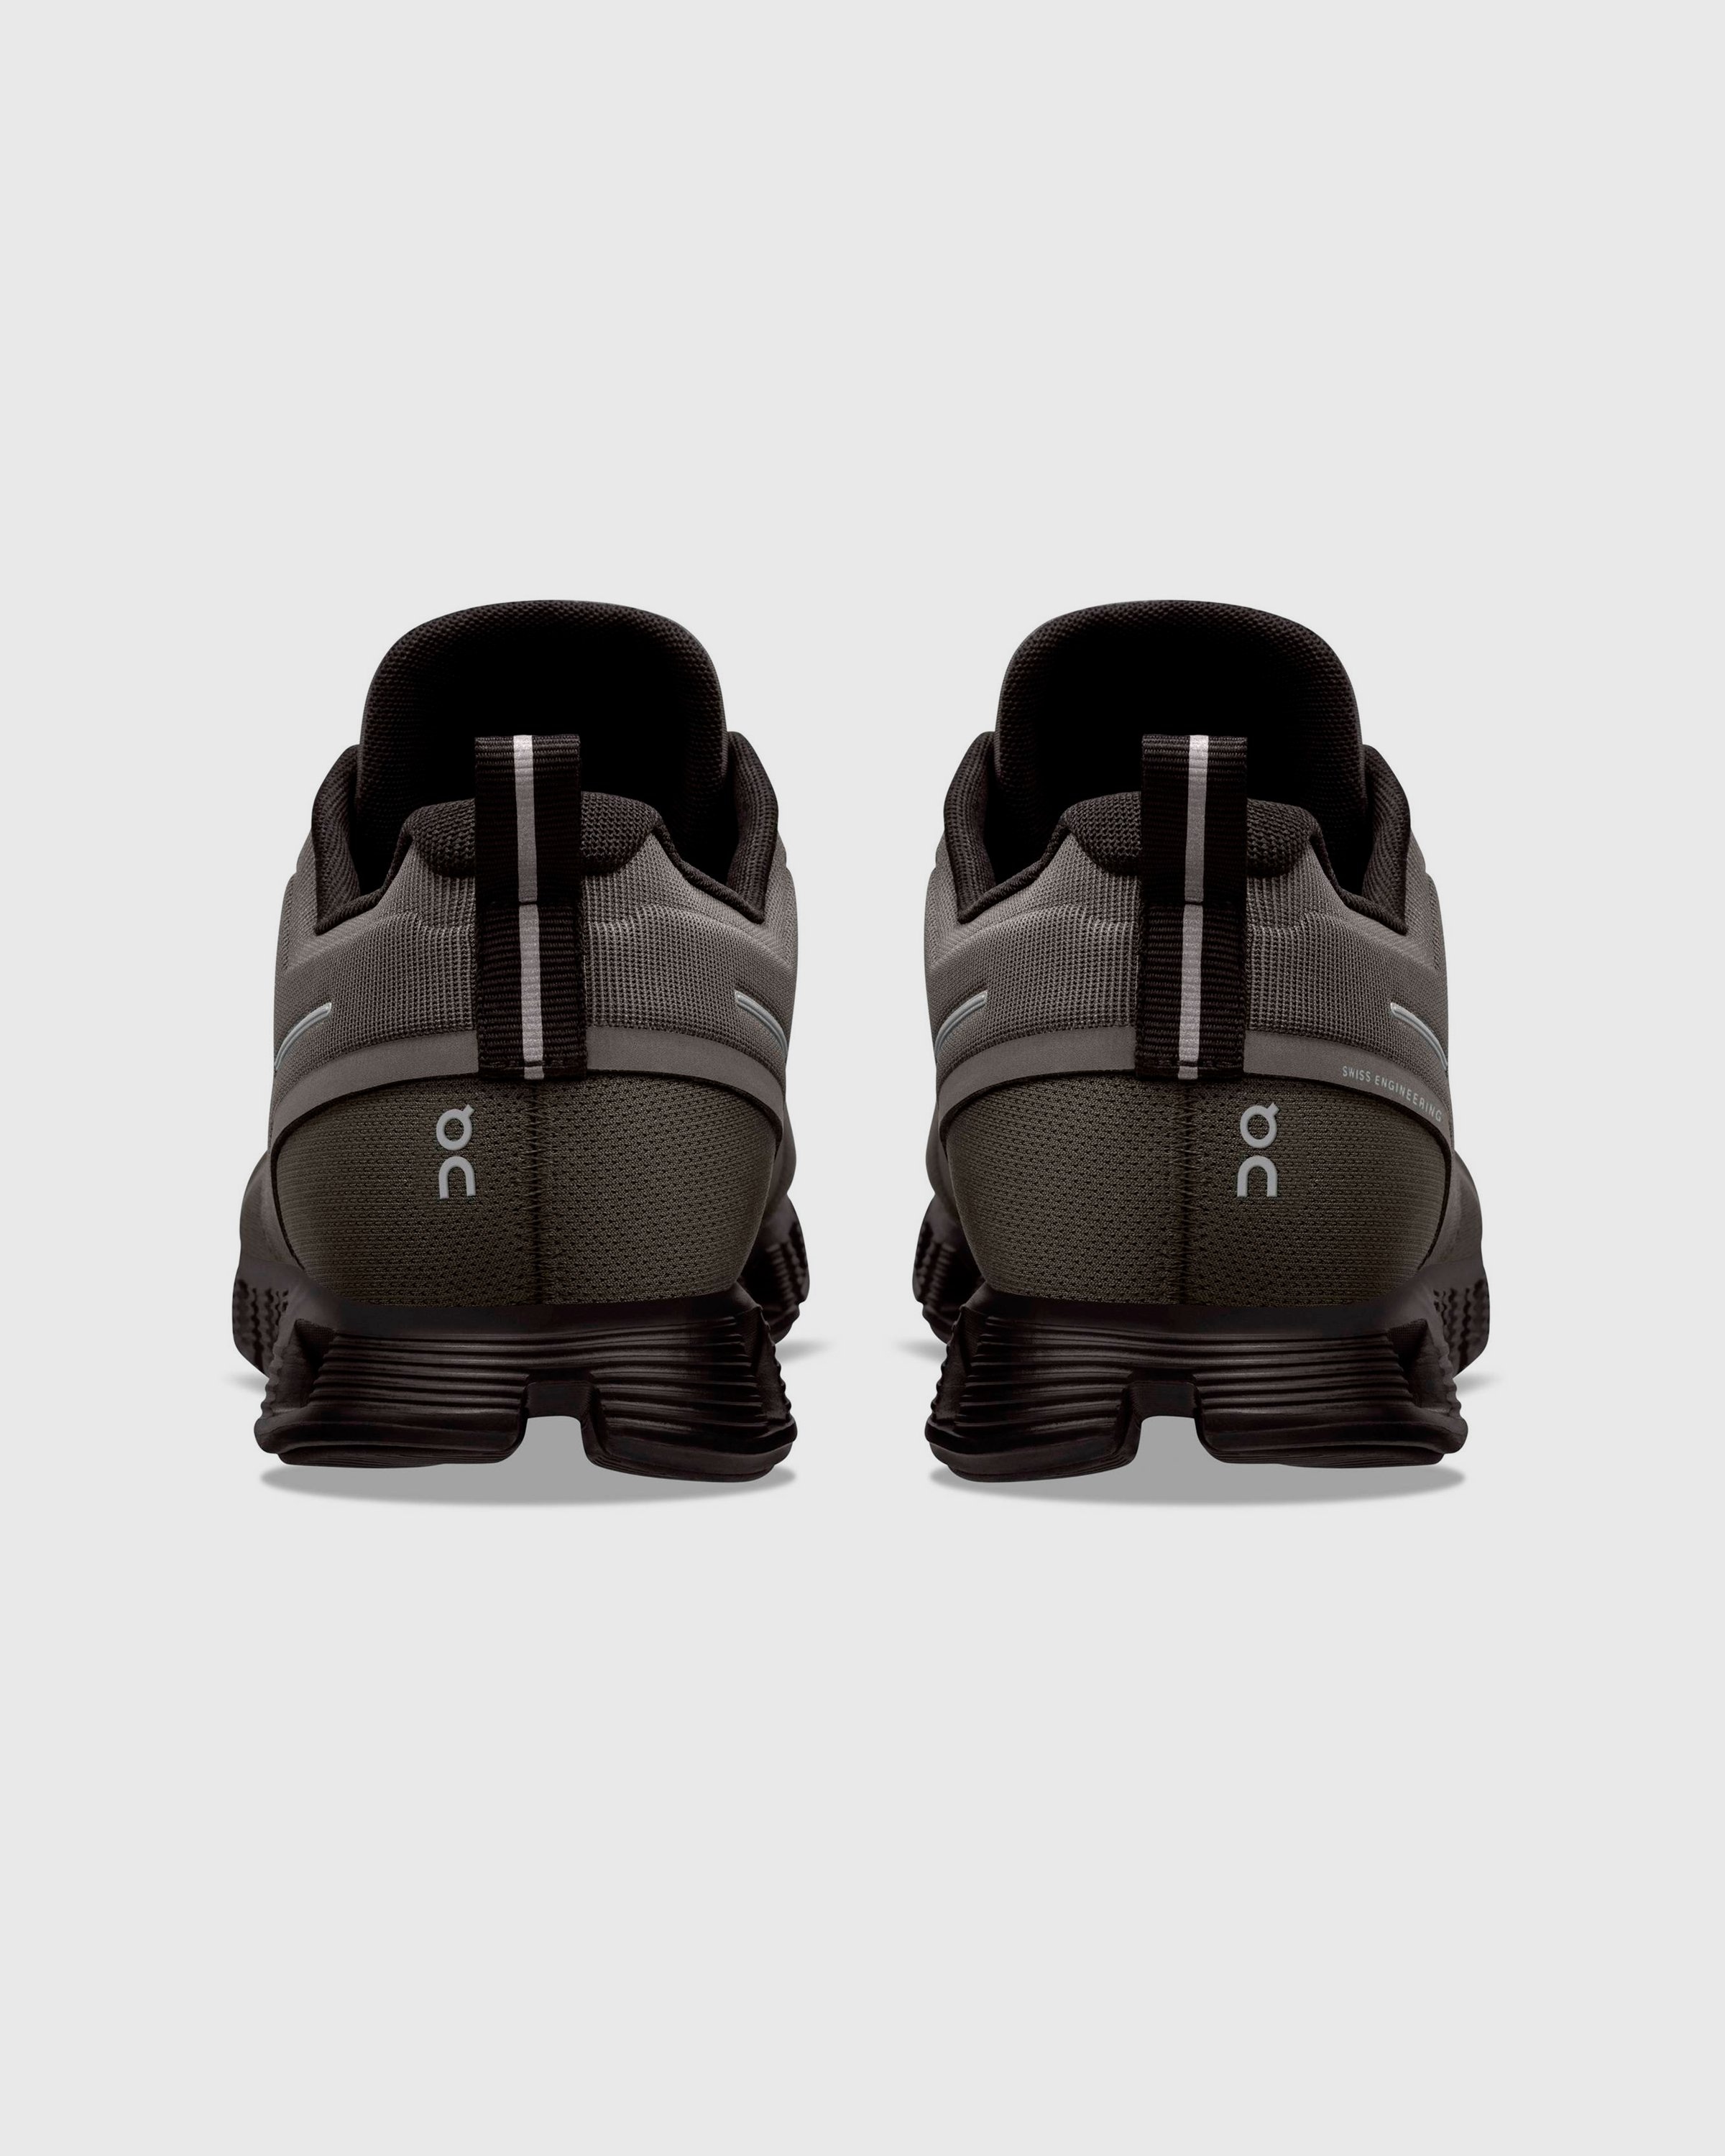 On – Cloud 5 Waterproof Olive/Black - Low Top Sneakers - Green - Image 5